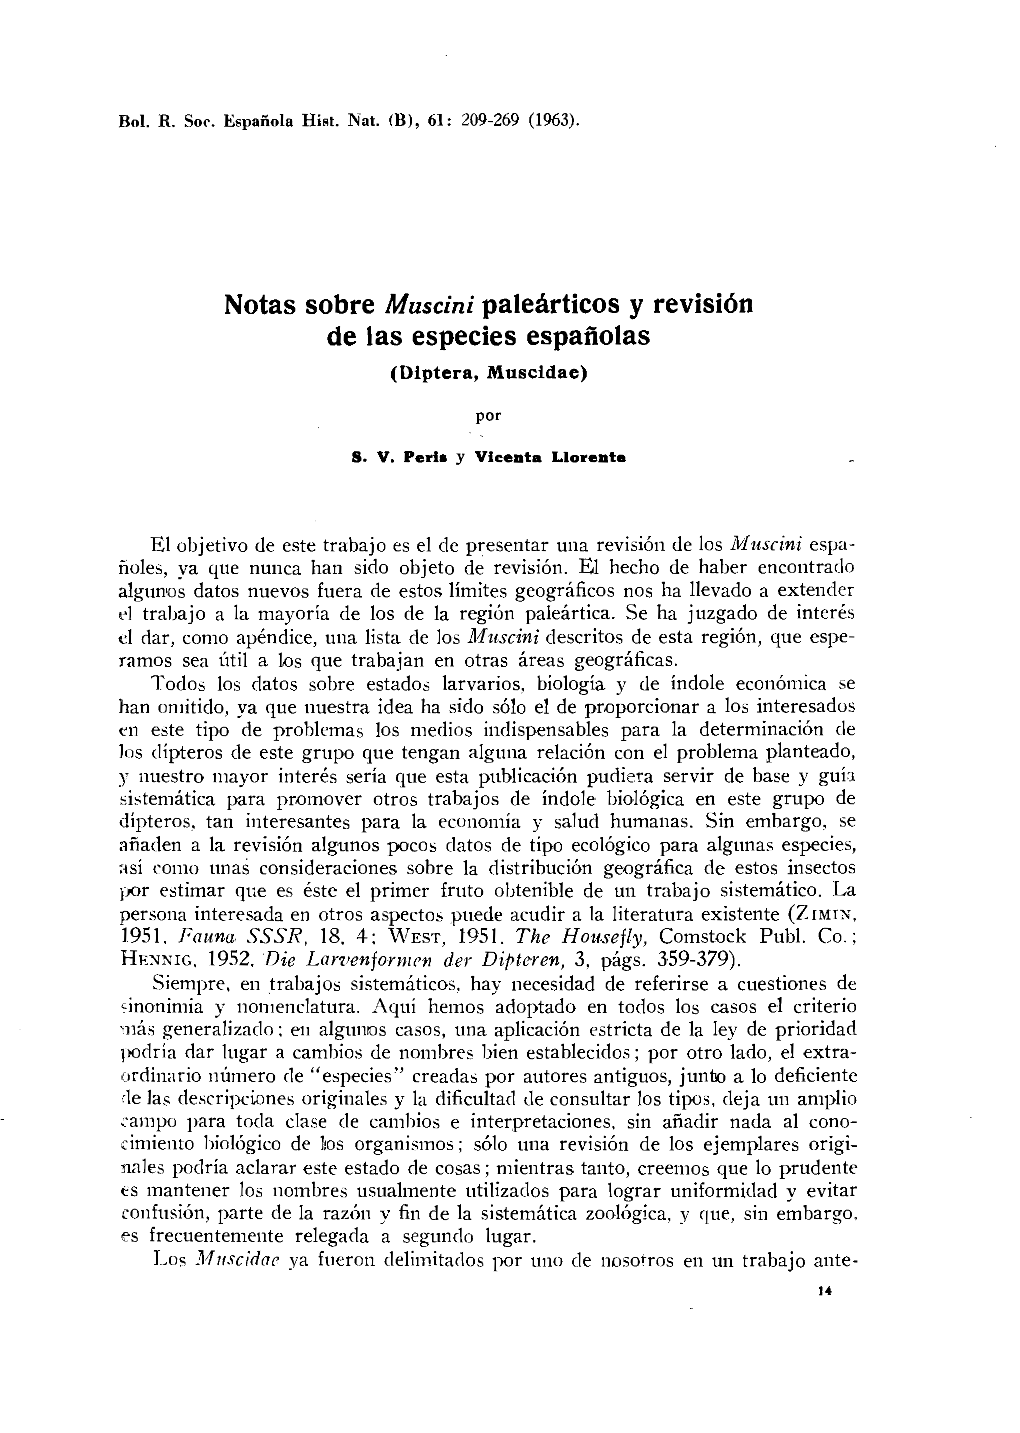 Notas Sobre Muscini Paleárticos Y Revisión De Las Especies Españolas (Diptera, Muscidae)